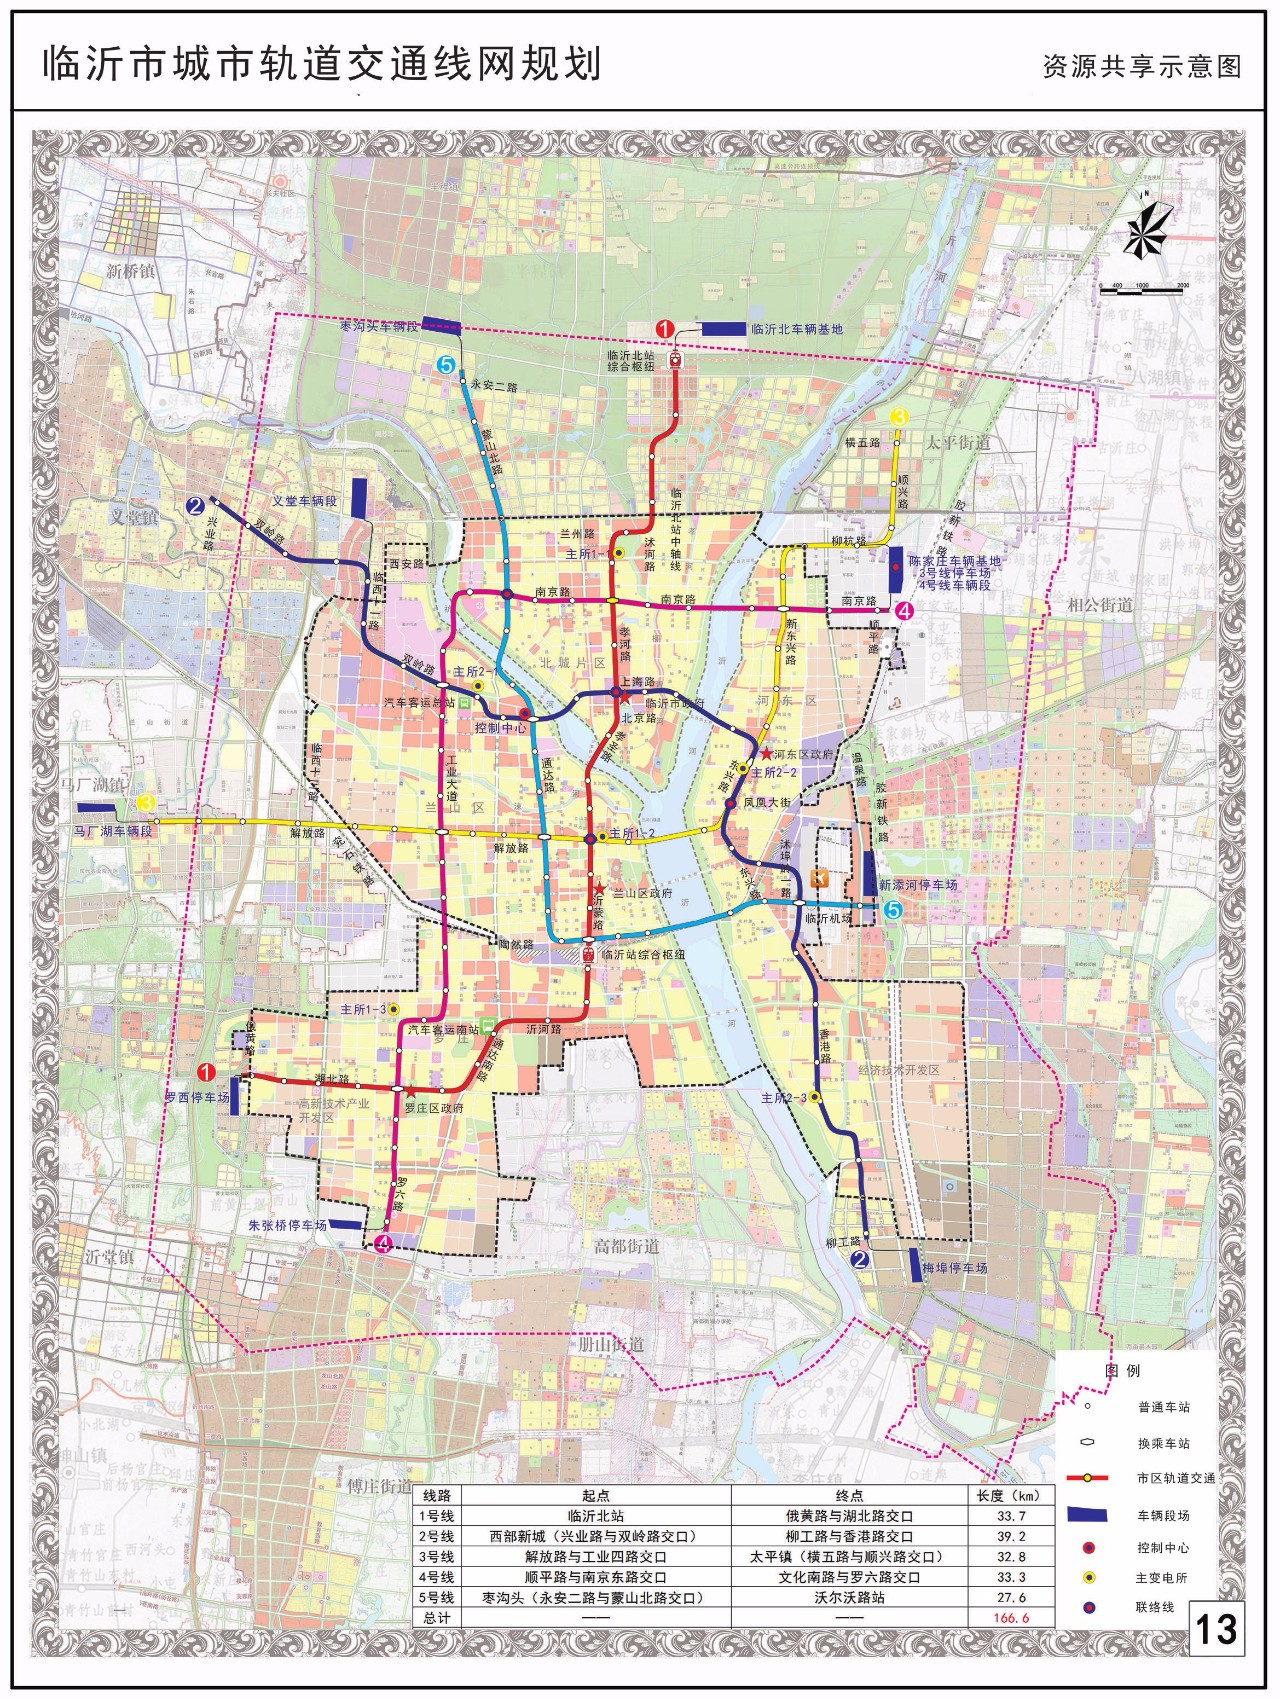 临沂市正式发布城市轨道交通线网规划!快看看经不经过你家